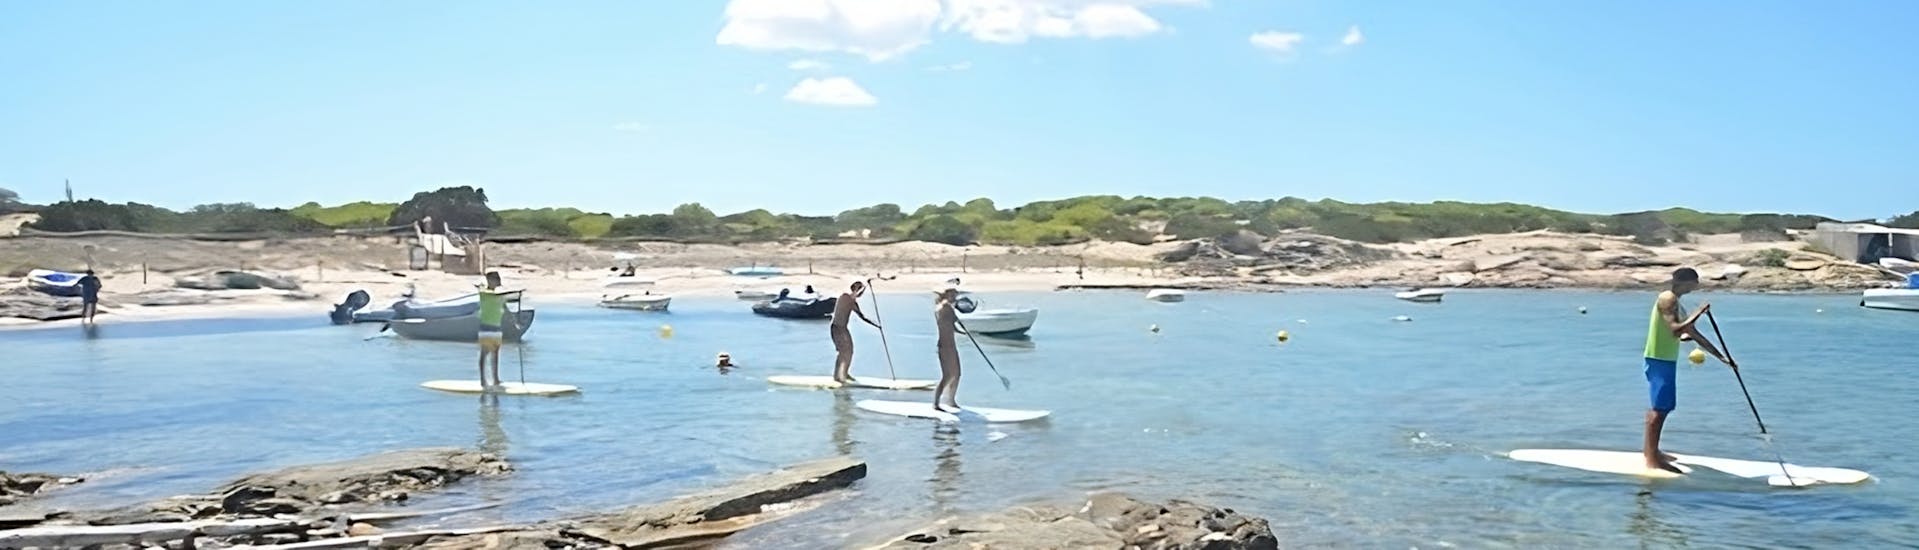 SUP-Verleih am Strand von Es Pujols auf Formentera.